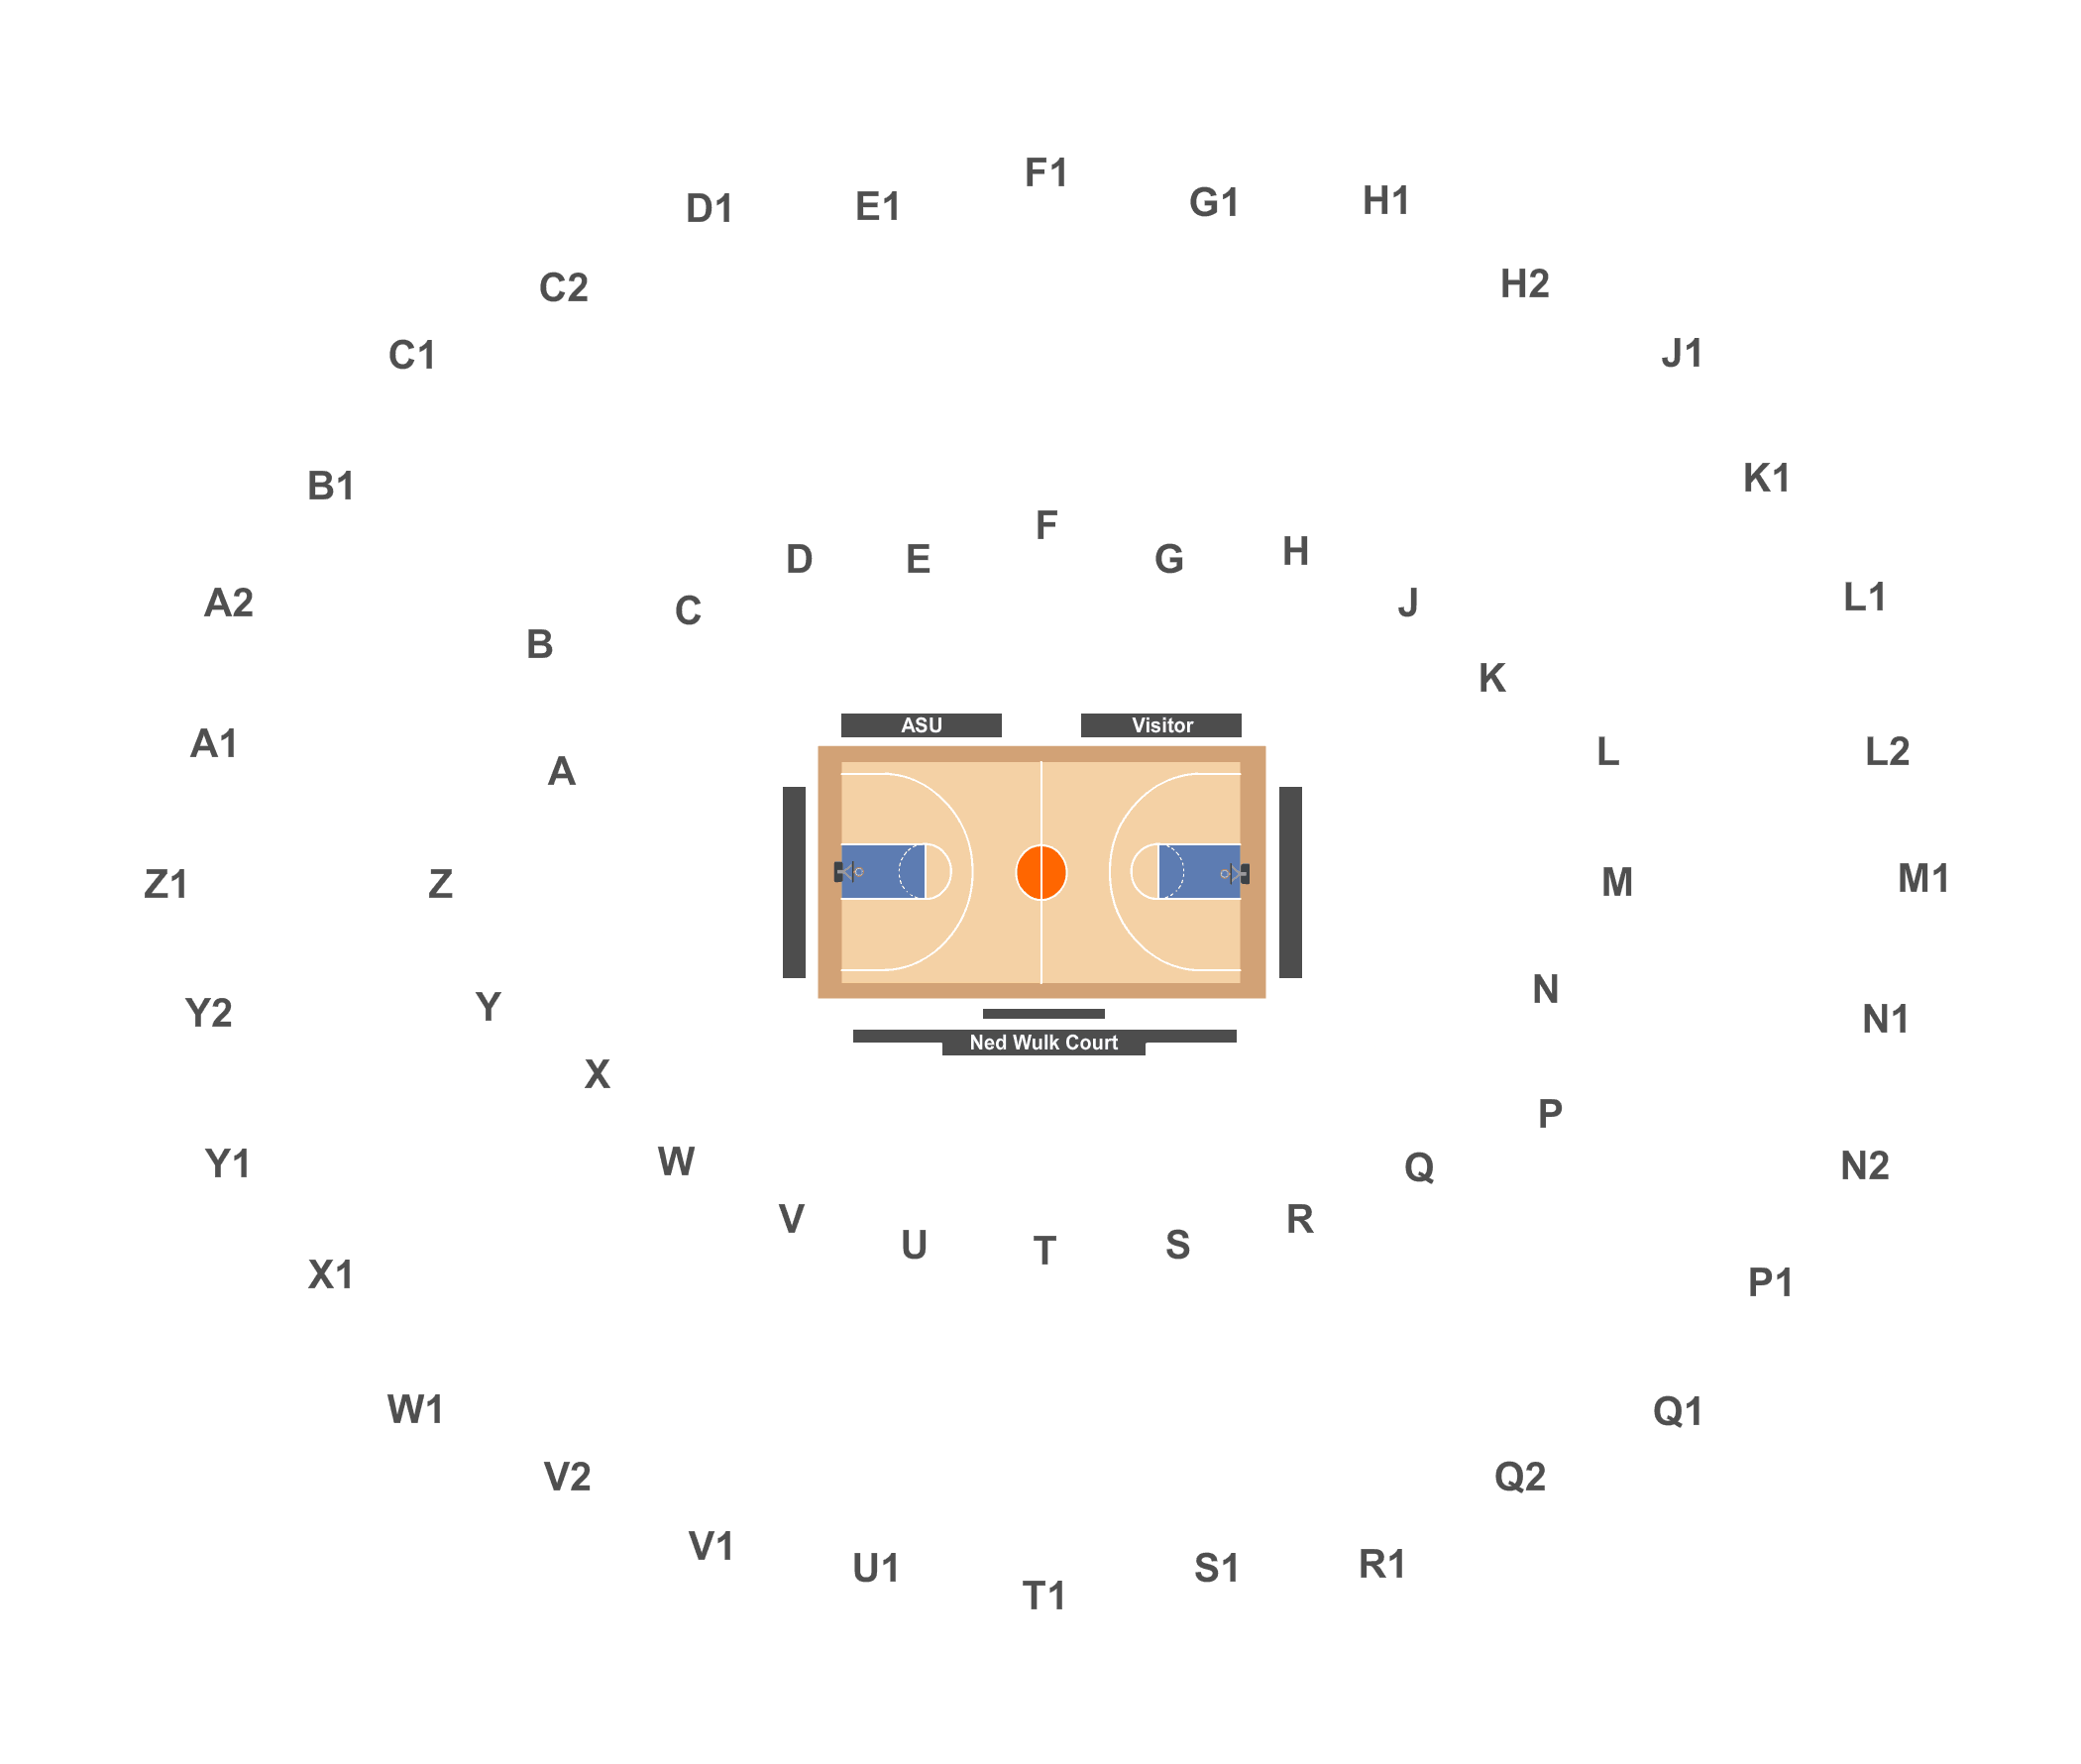 Creighton Basketball Seating Chart